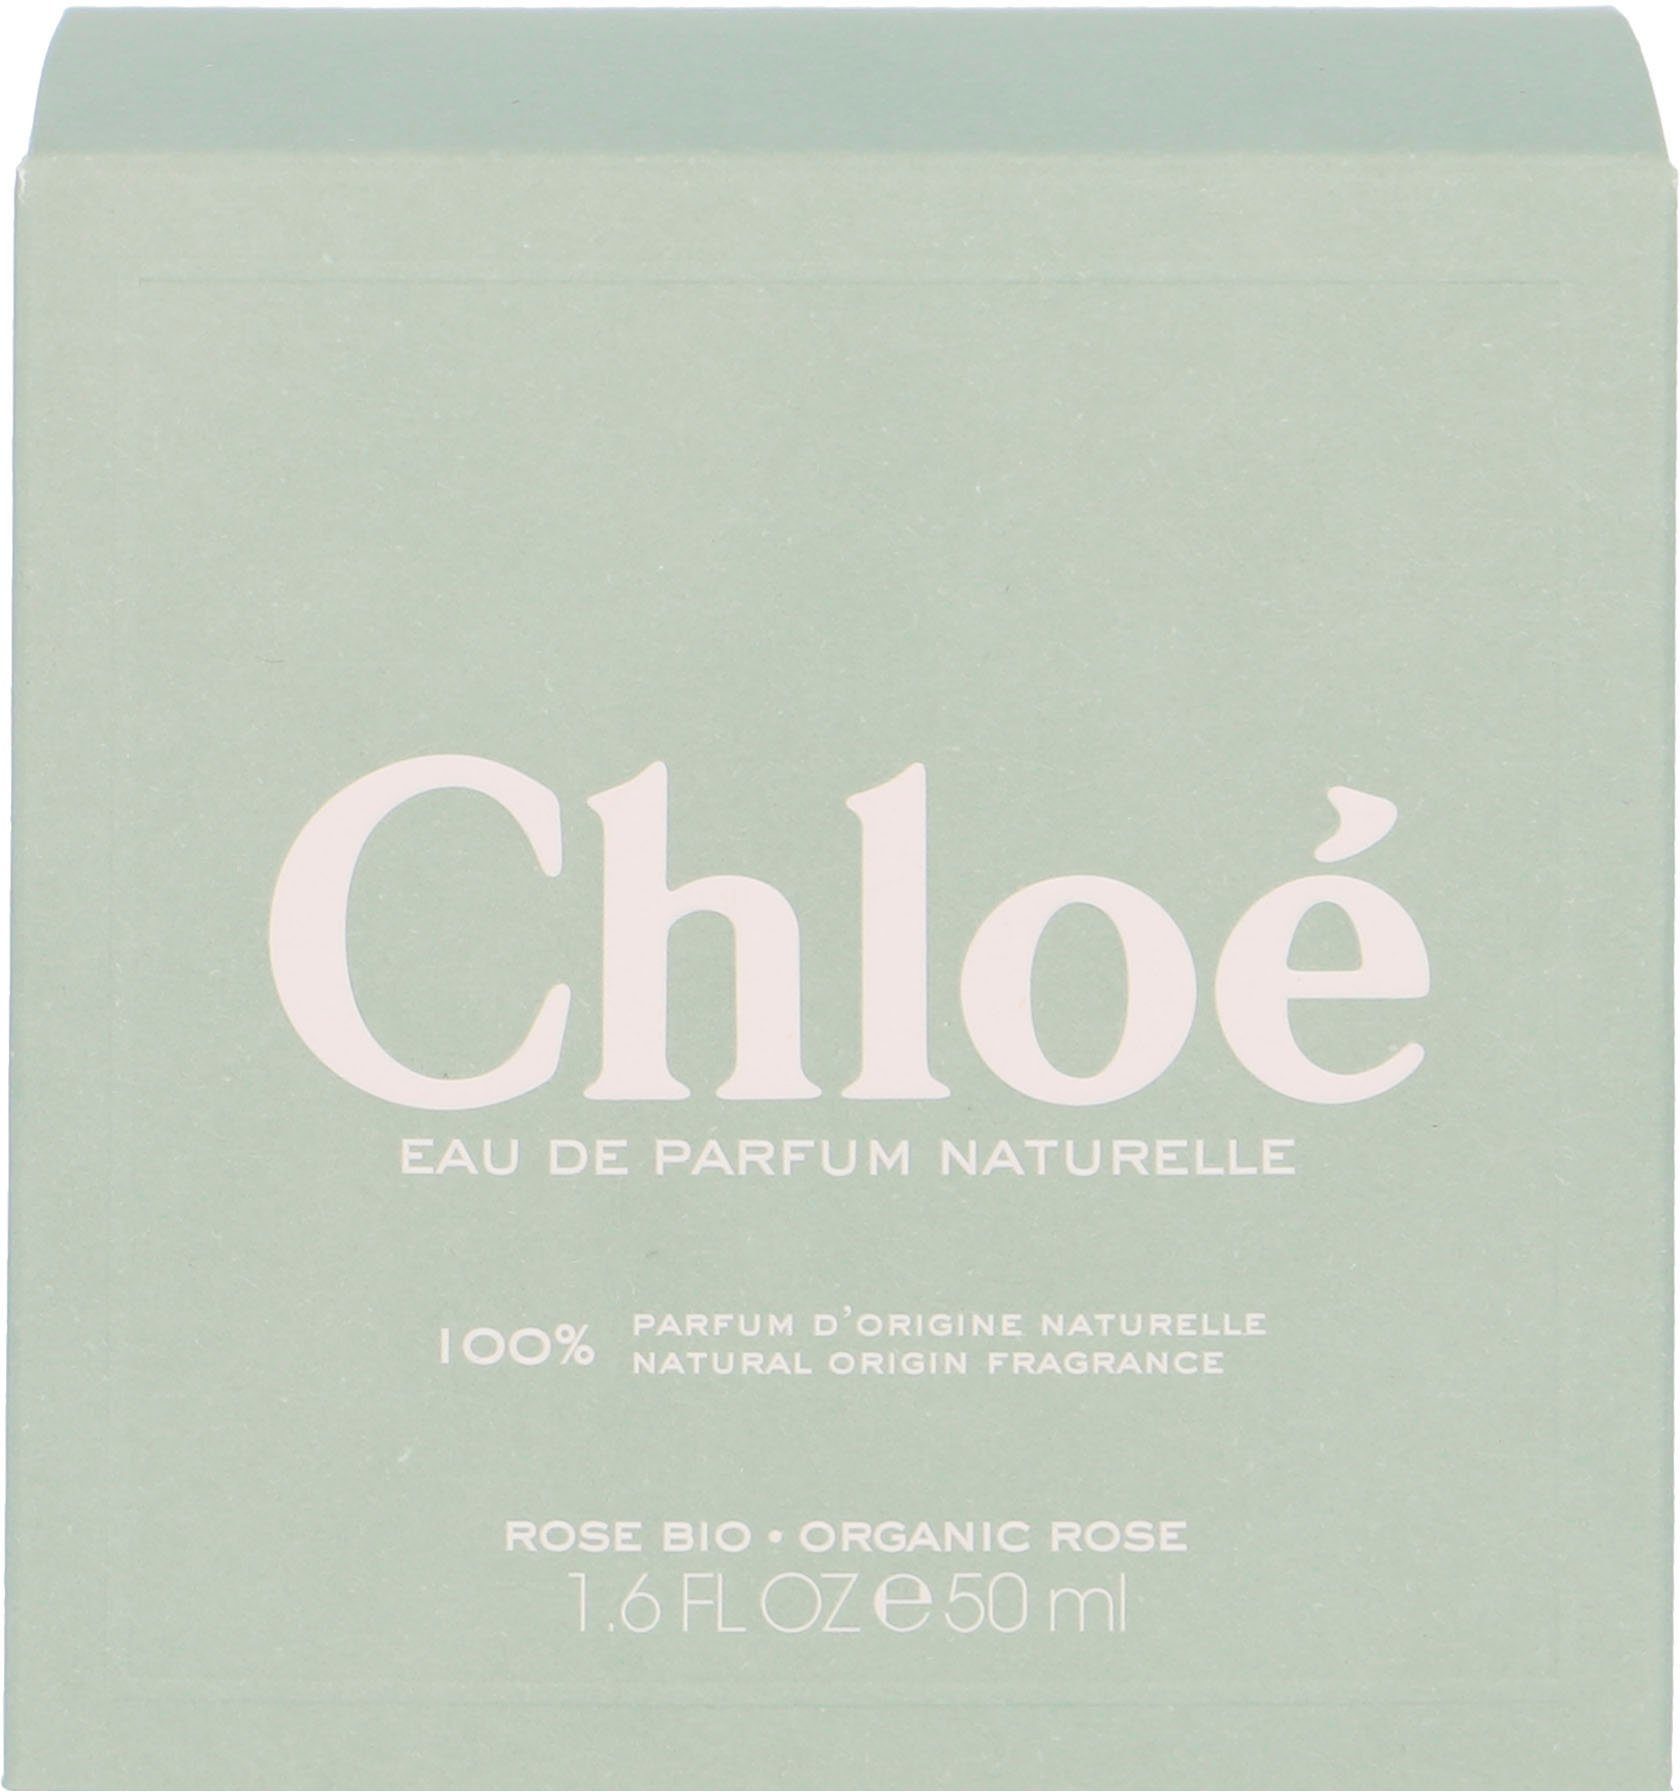 Chloé de Eau Signature Naturelle Parfum